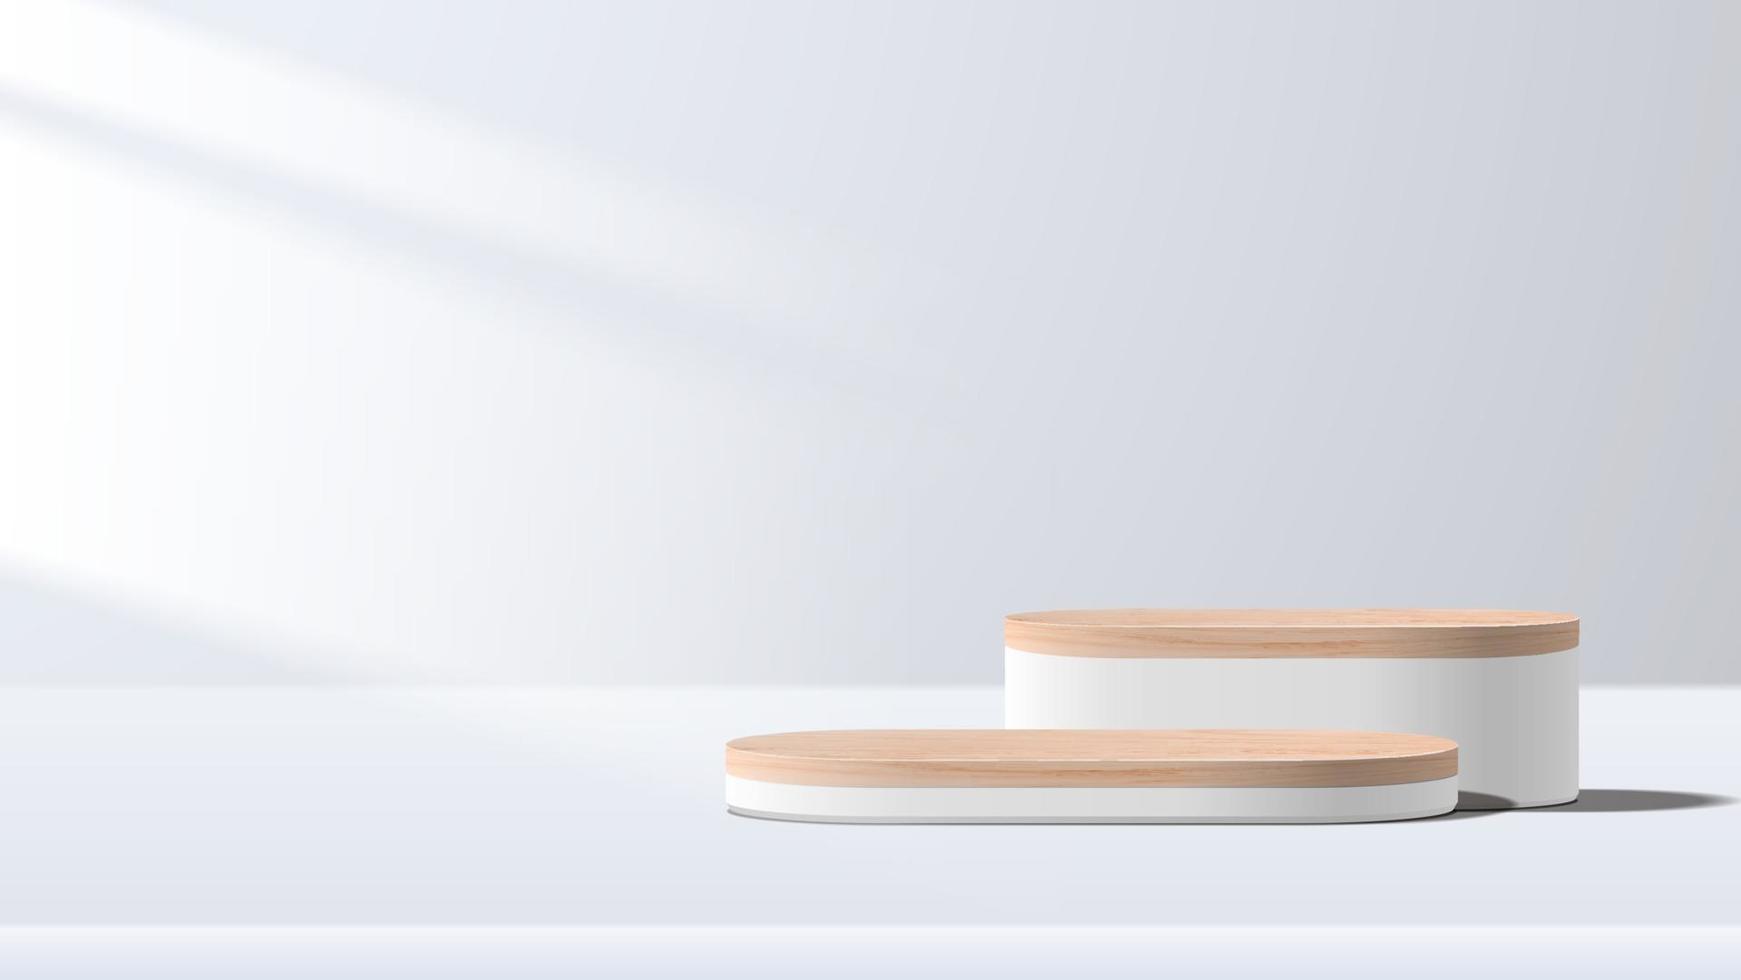 abstrakte minimale Szene mit geometrischen Formen. Holzpodest in weißem Hintergrund. Produktpräsentation, Mock-Up, Show-Kosmetikprodukt-Display, Podium, Bühnenpodest oder Plattform. 3D-Vektor vektor